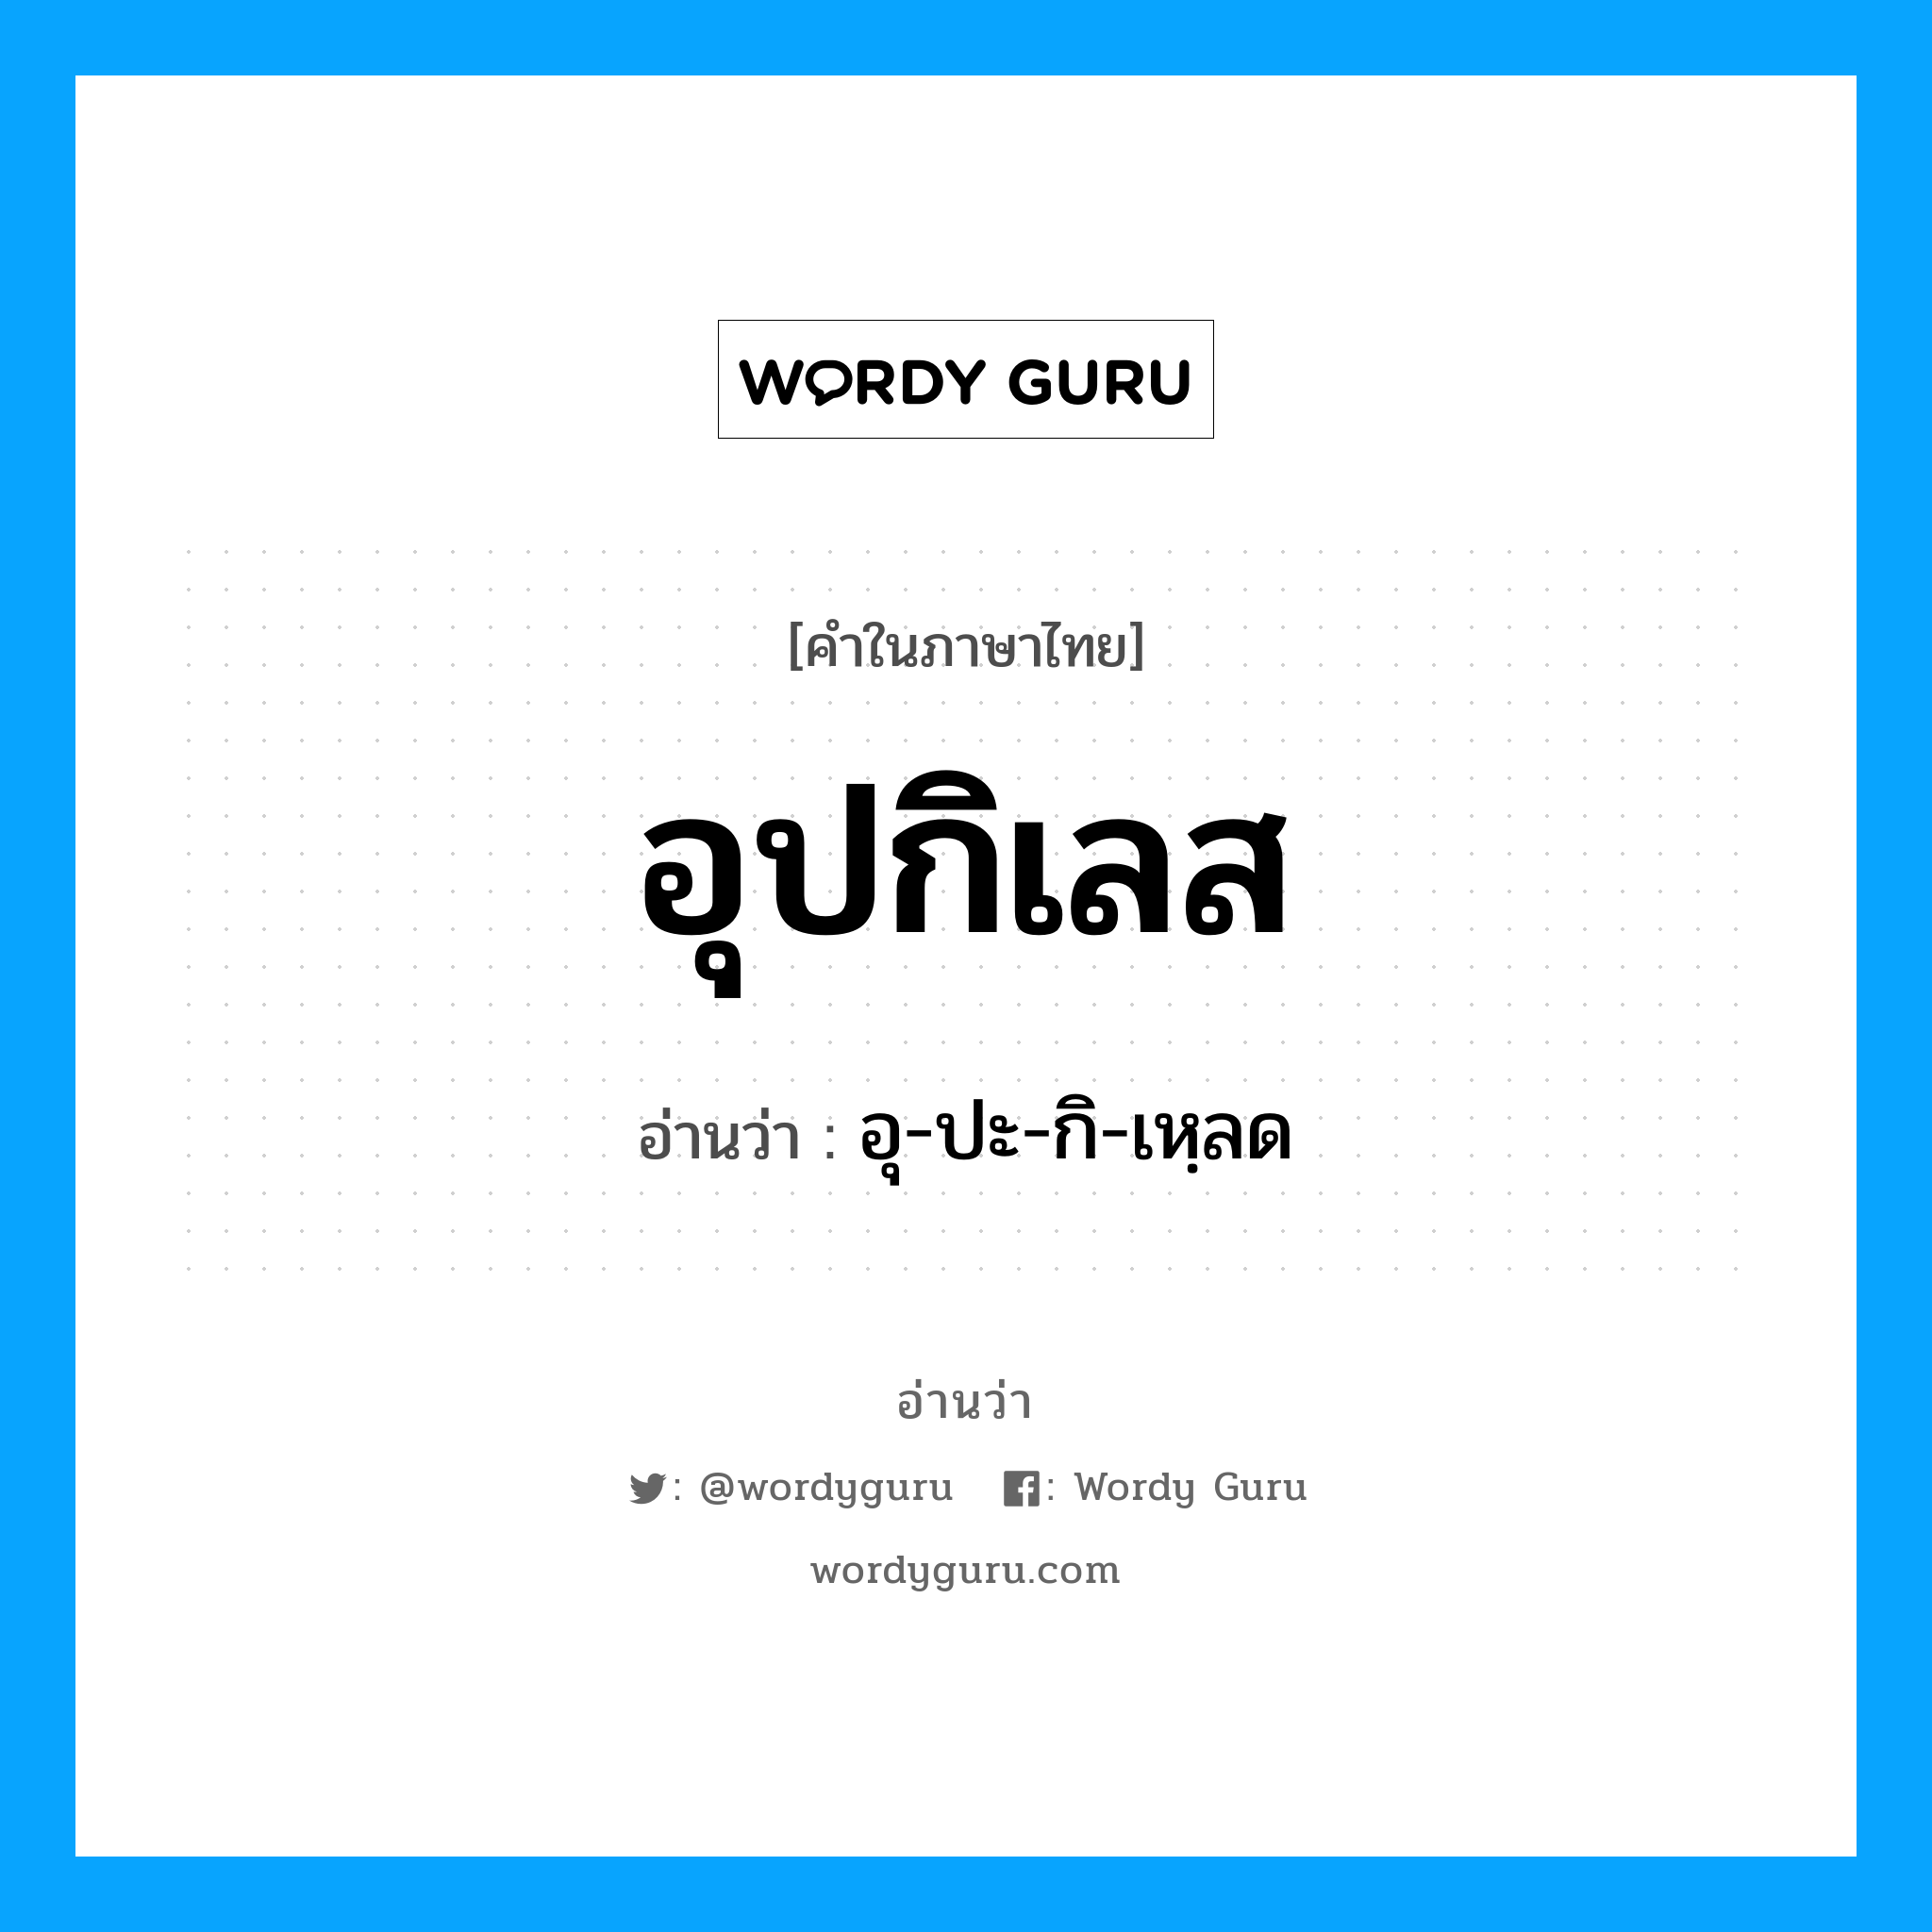 อุ-ปะ-กิ-เหฺลด เป็นคำอ่านของคำไหน?, คำในภาษาไทย อุ-ปะ-กิ-เหฺลด อ่านว่า อุปกิเลส